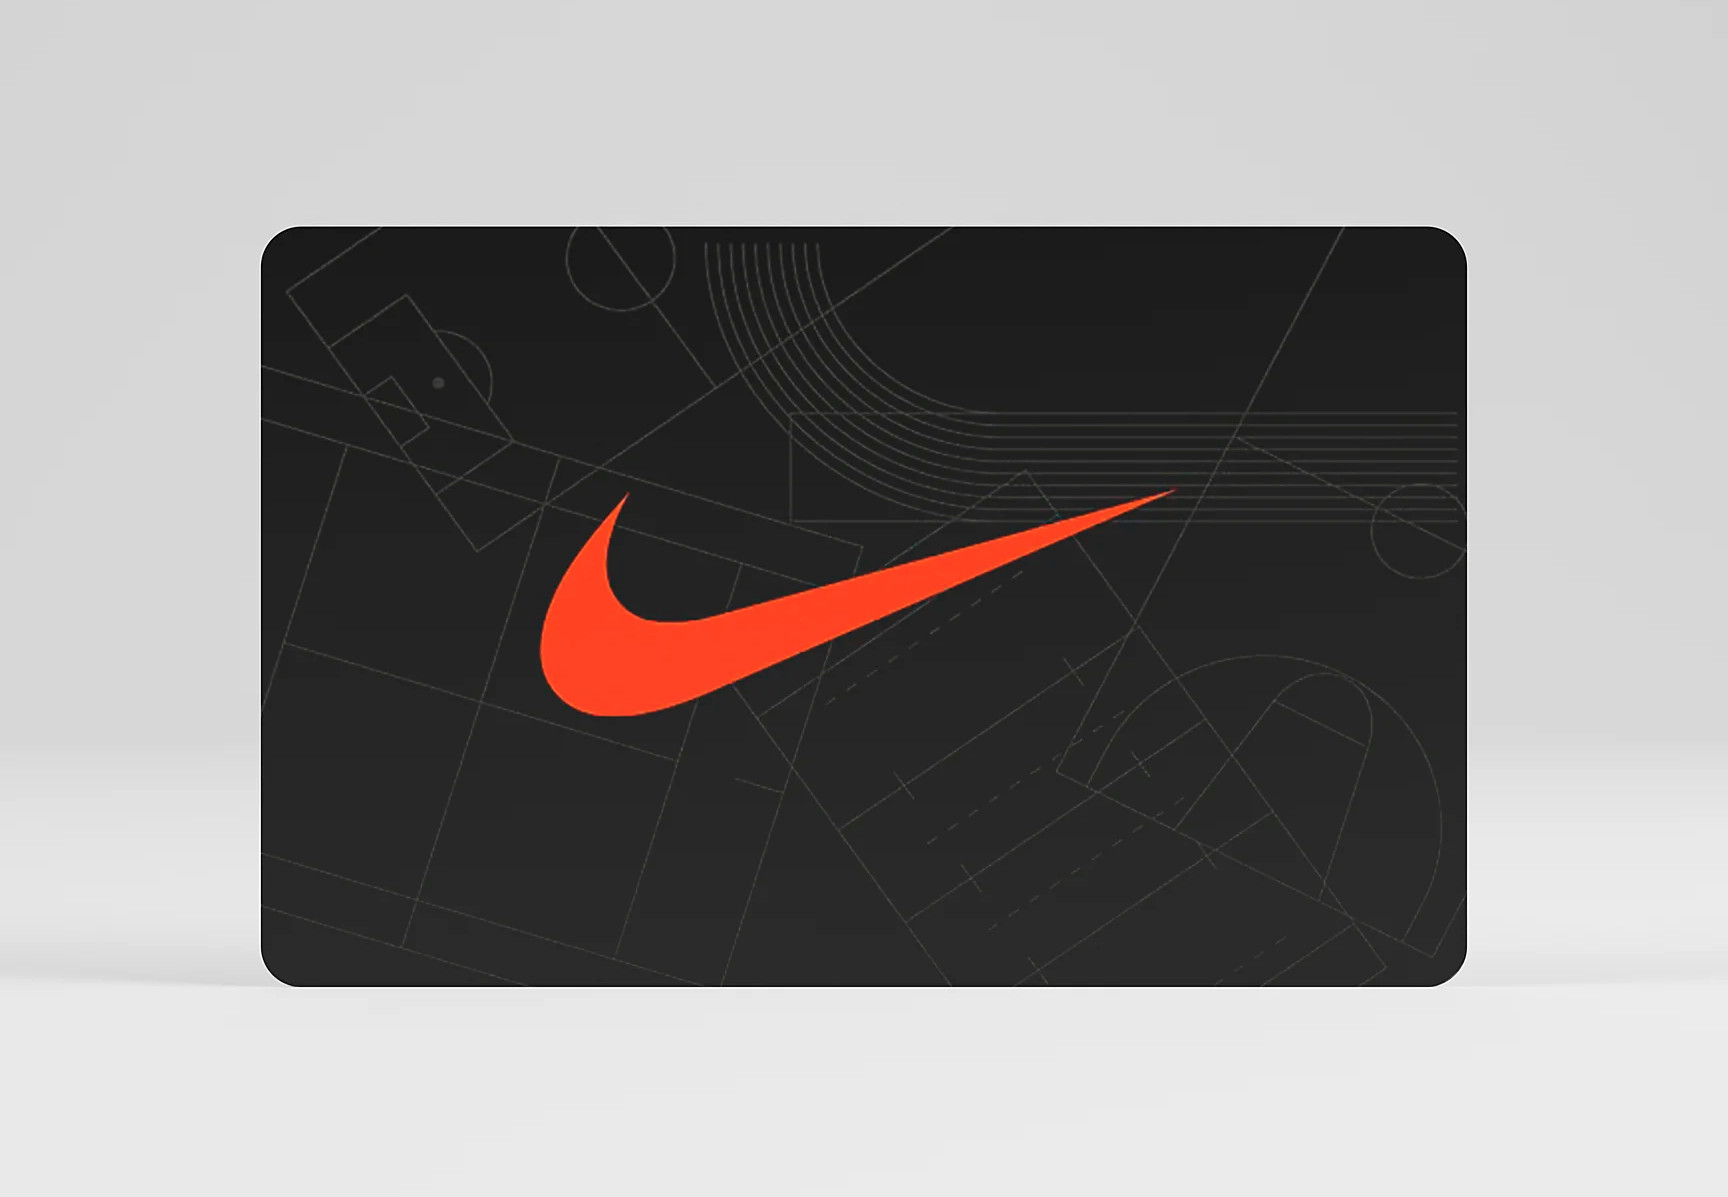 Nike $15 Gift Card US